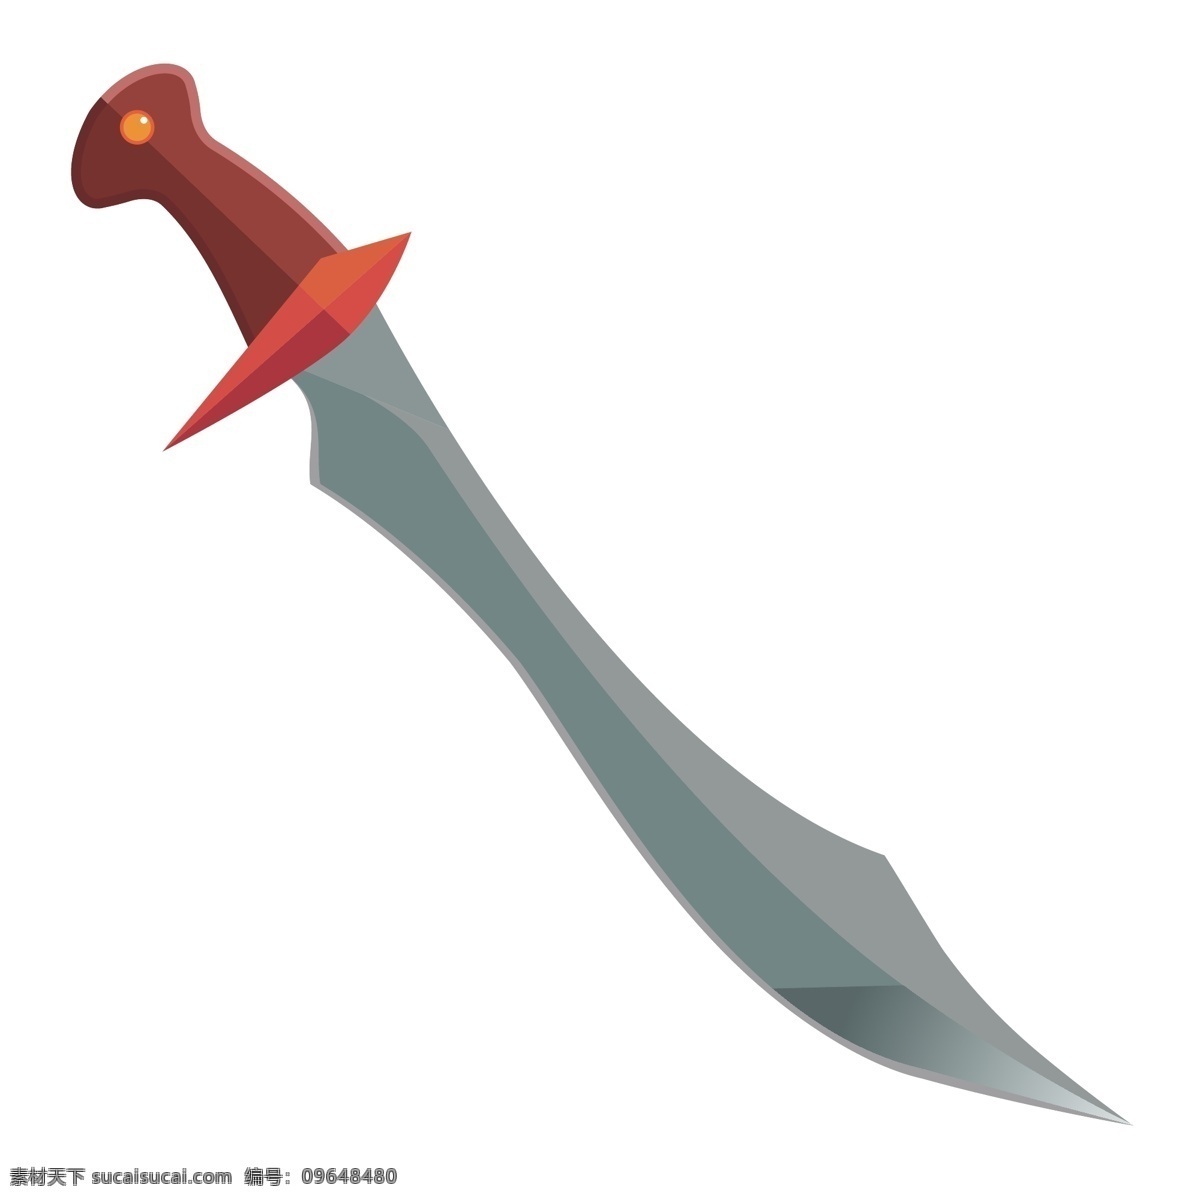 红色 手柄 宝剑 装饰 插画 红色手柄宝剑 漂亮的宝剑 创意宝剑 立体宝剑 精美宝剑 卡通宝剑 古风宝剑